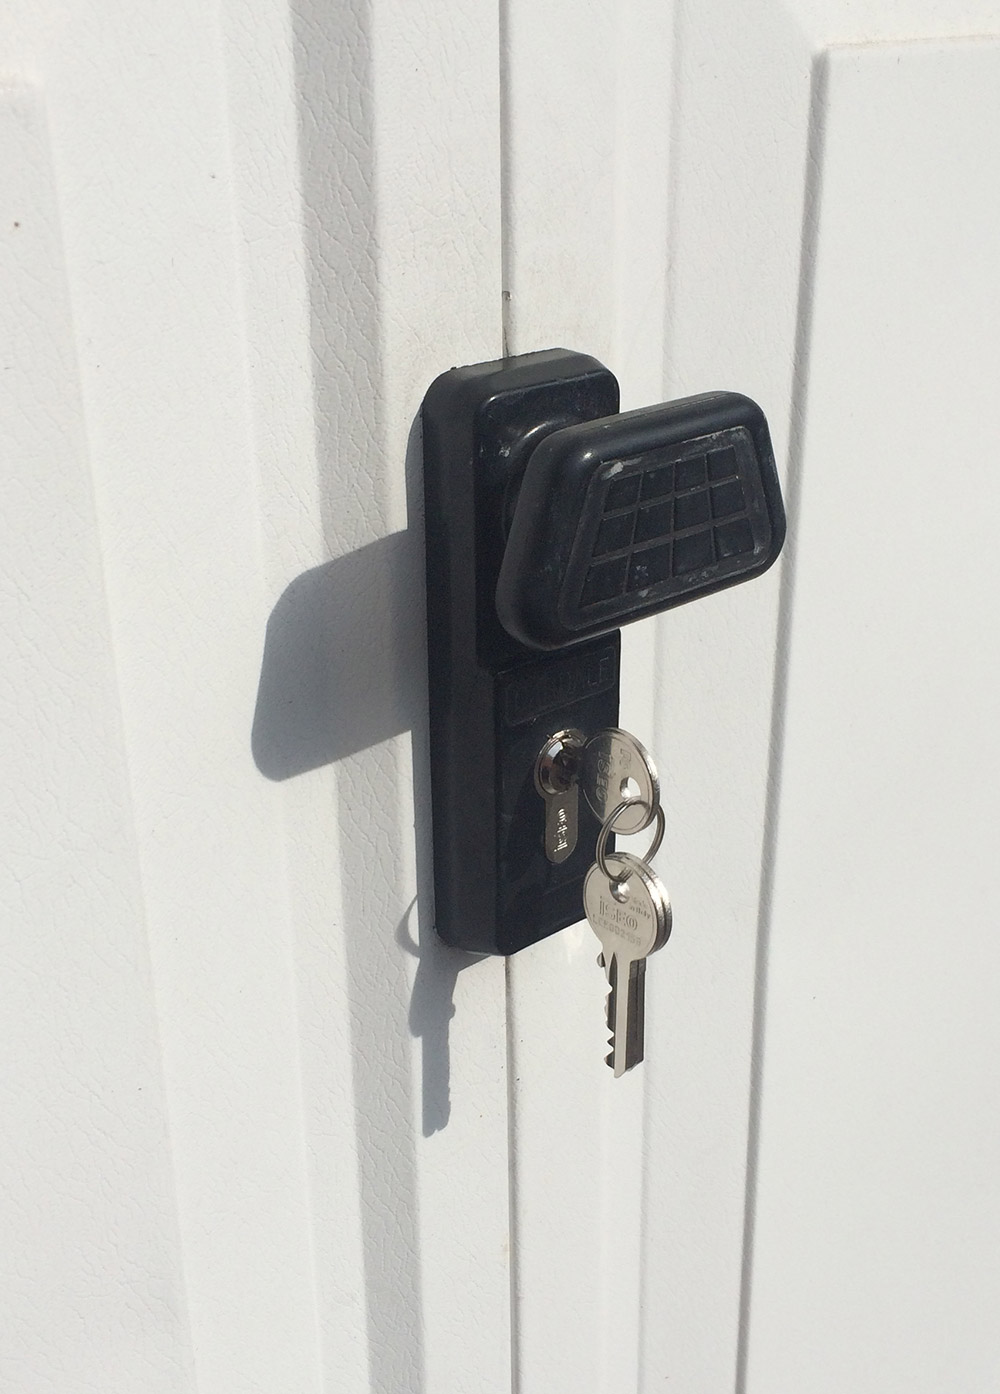 Modern Garage Door Lock Replacement Uk with Simple Decor